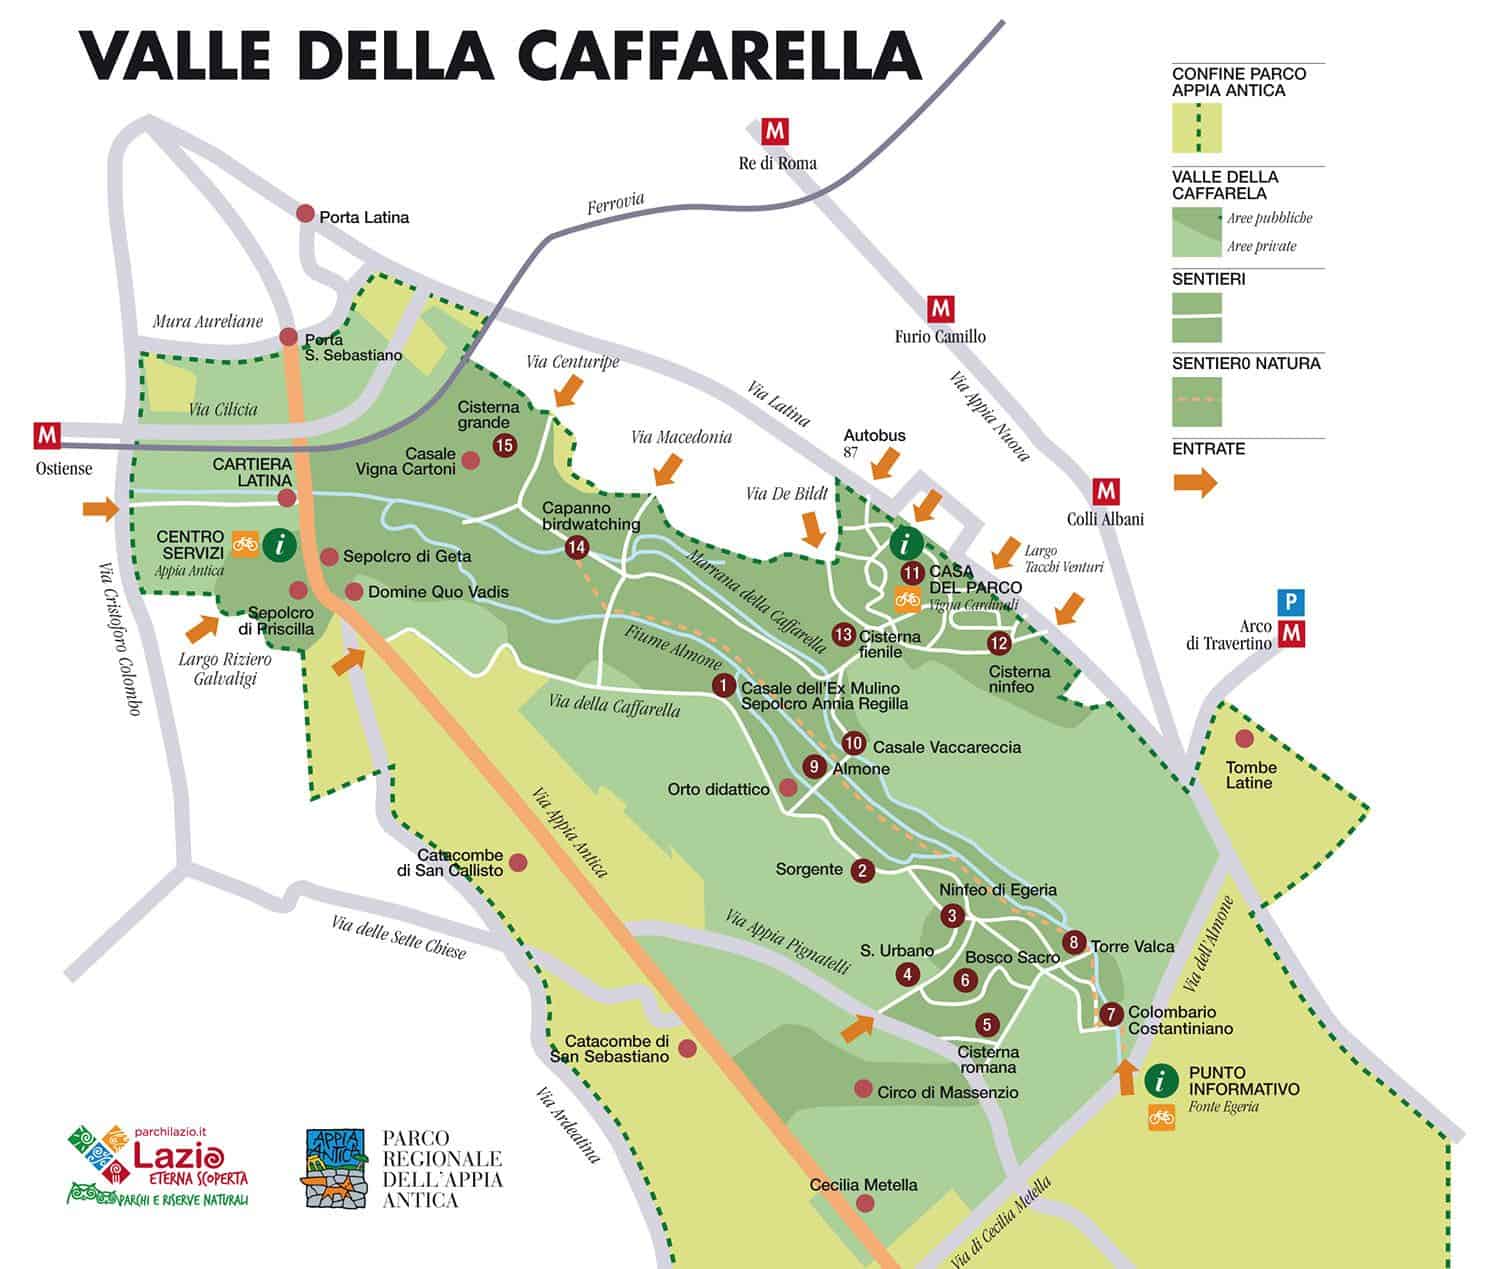 Parco della Caffarella | Parco regionale dell’Appia antica